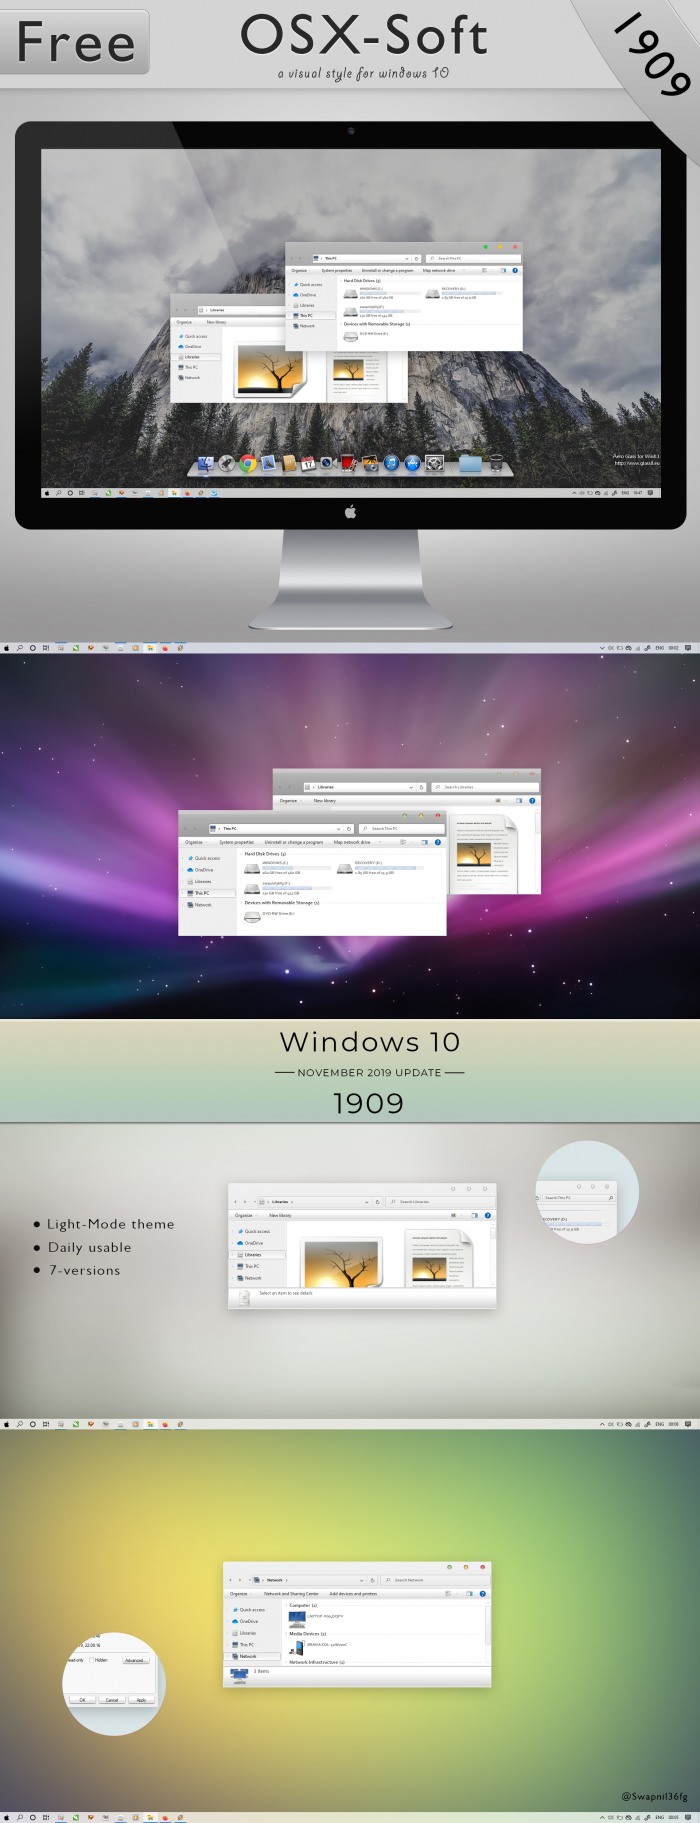 Mac-osx-soft — светлые темы для поклонников дизайна Apple